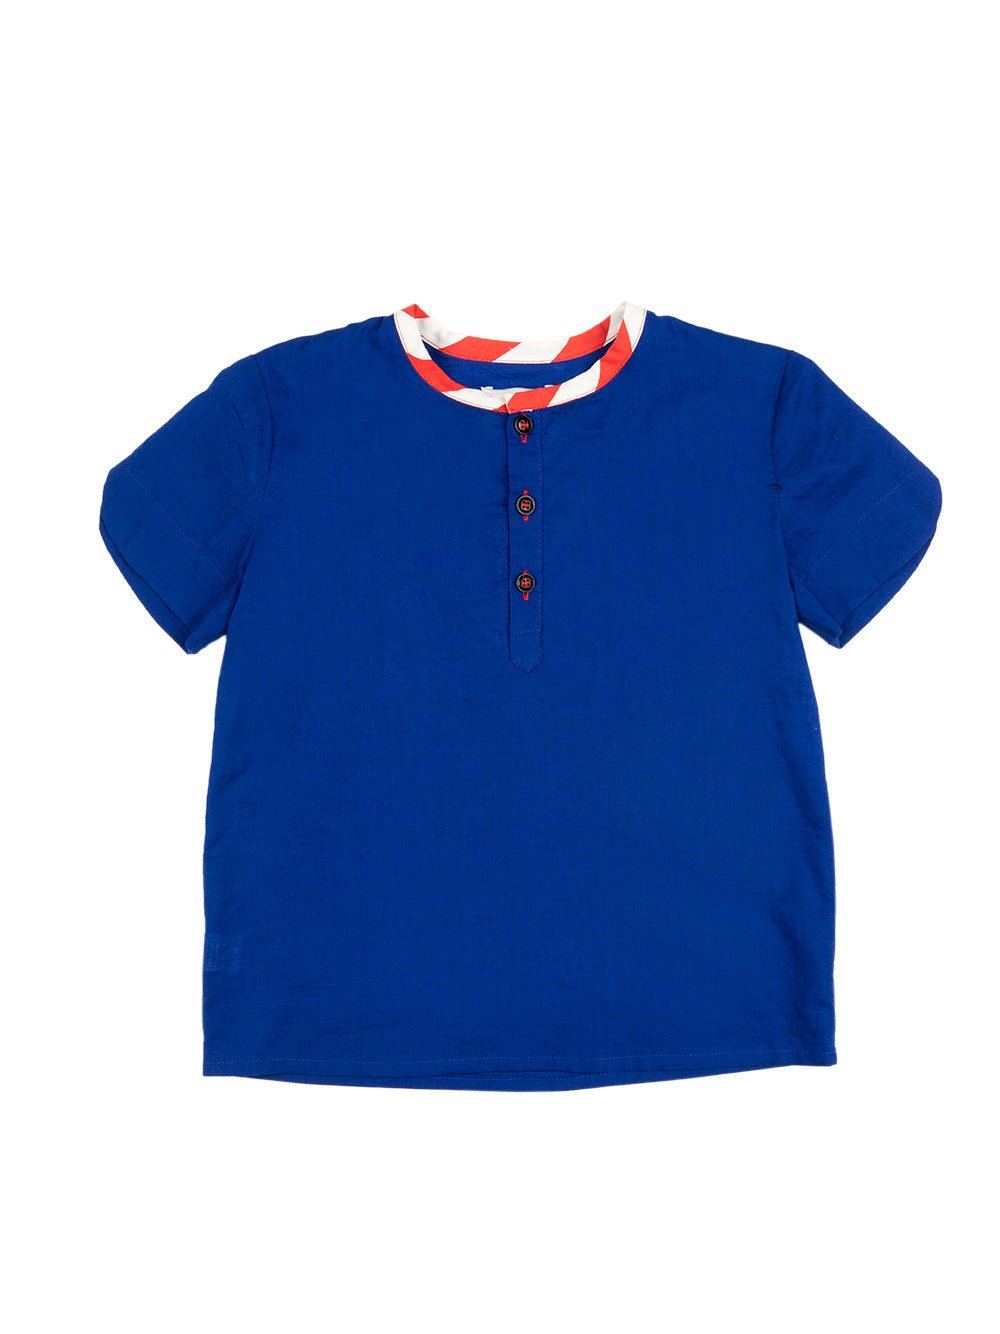 Mao Blue Shirt